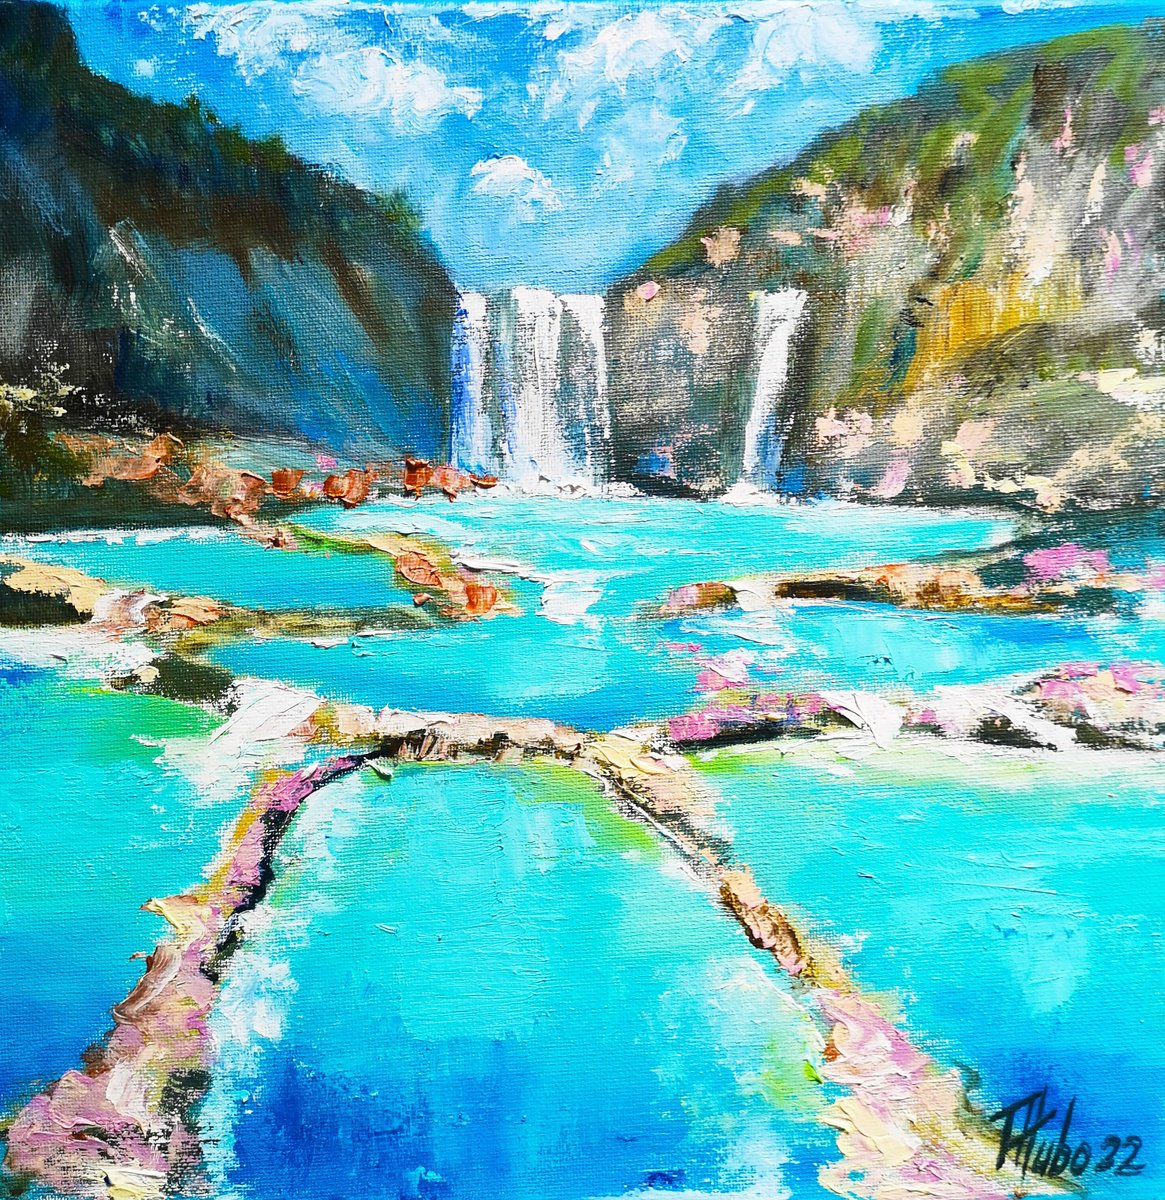 Waterfall in mexico. by Tatajana Obuhova